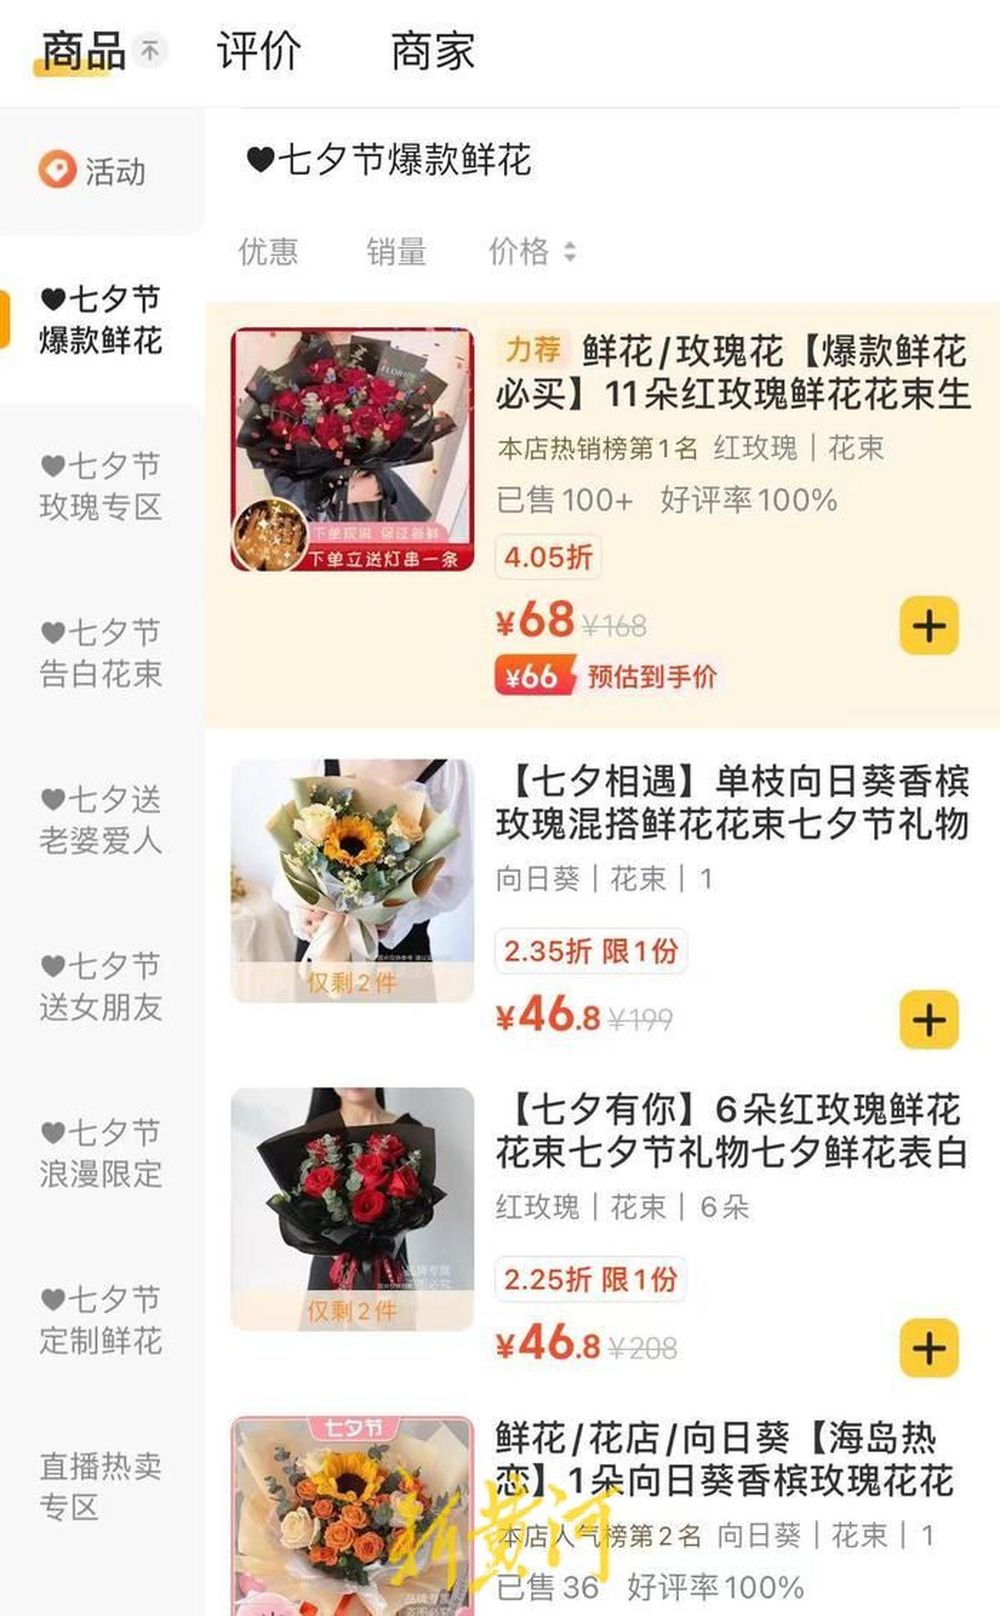 七夕节催生鲜花经济，线上购买成主要选择方式